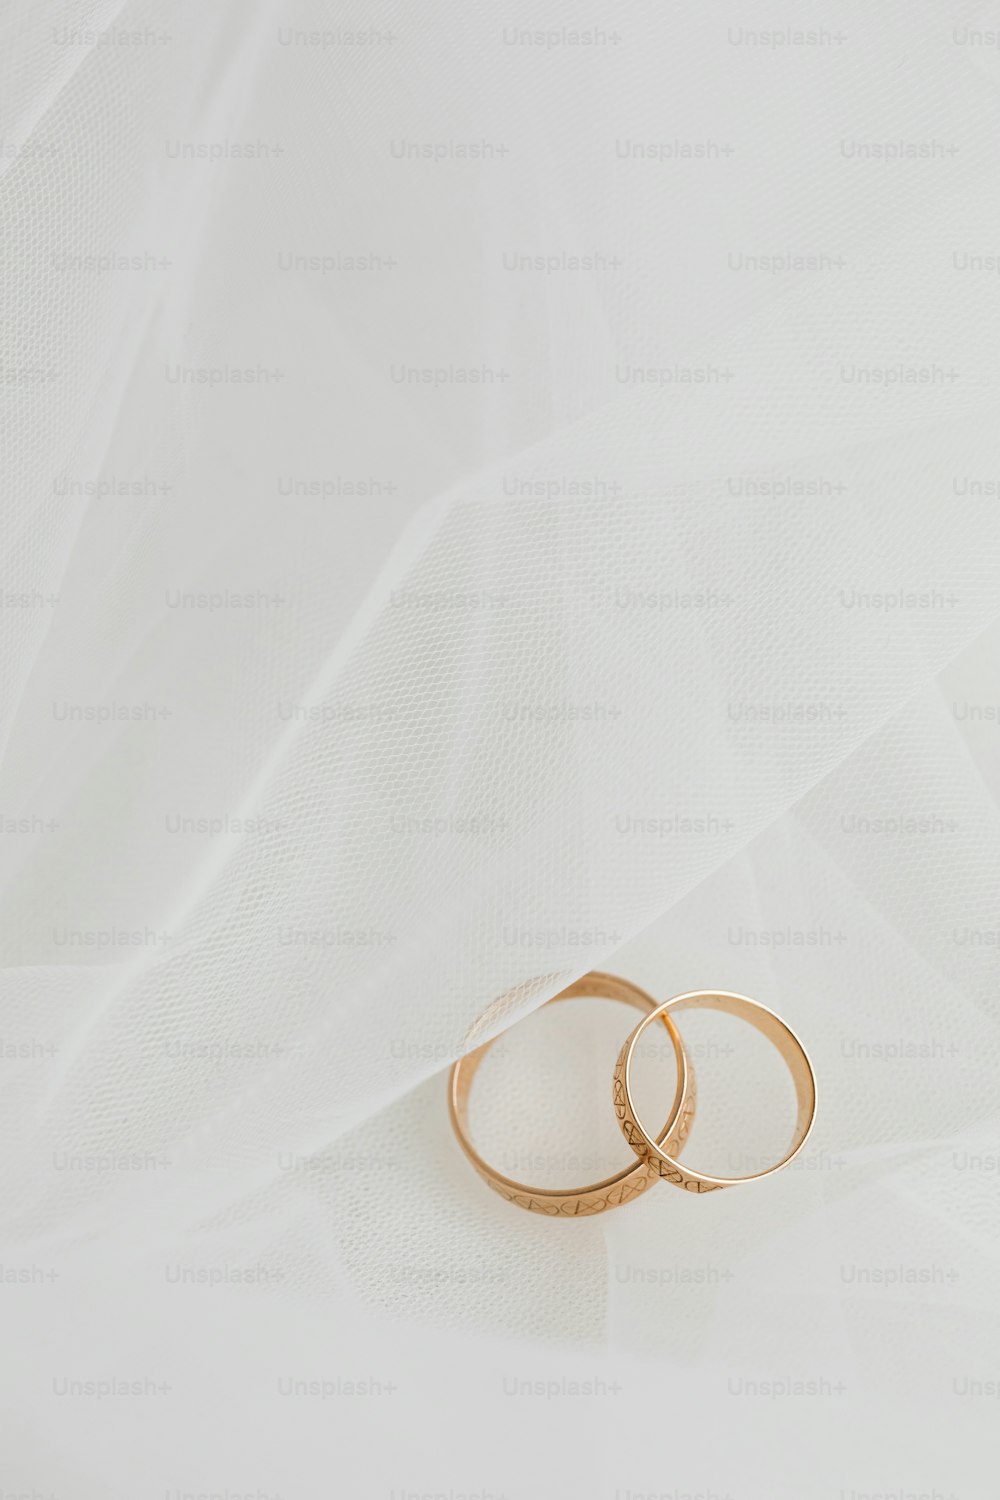 흰색 바탕에 두 개의 금 결혼 반지